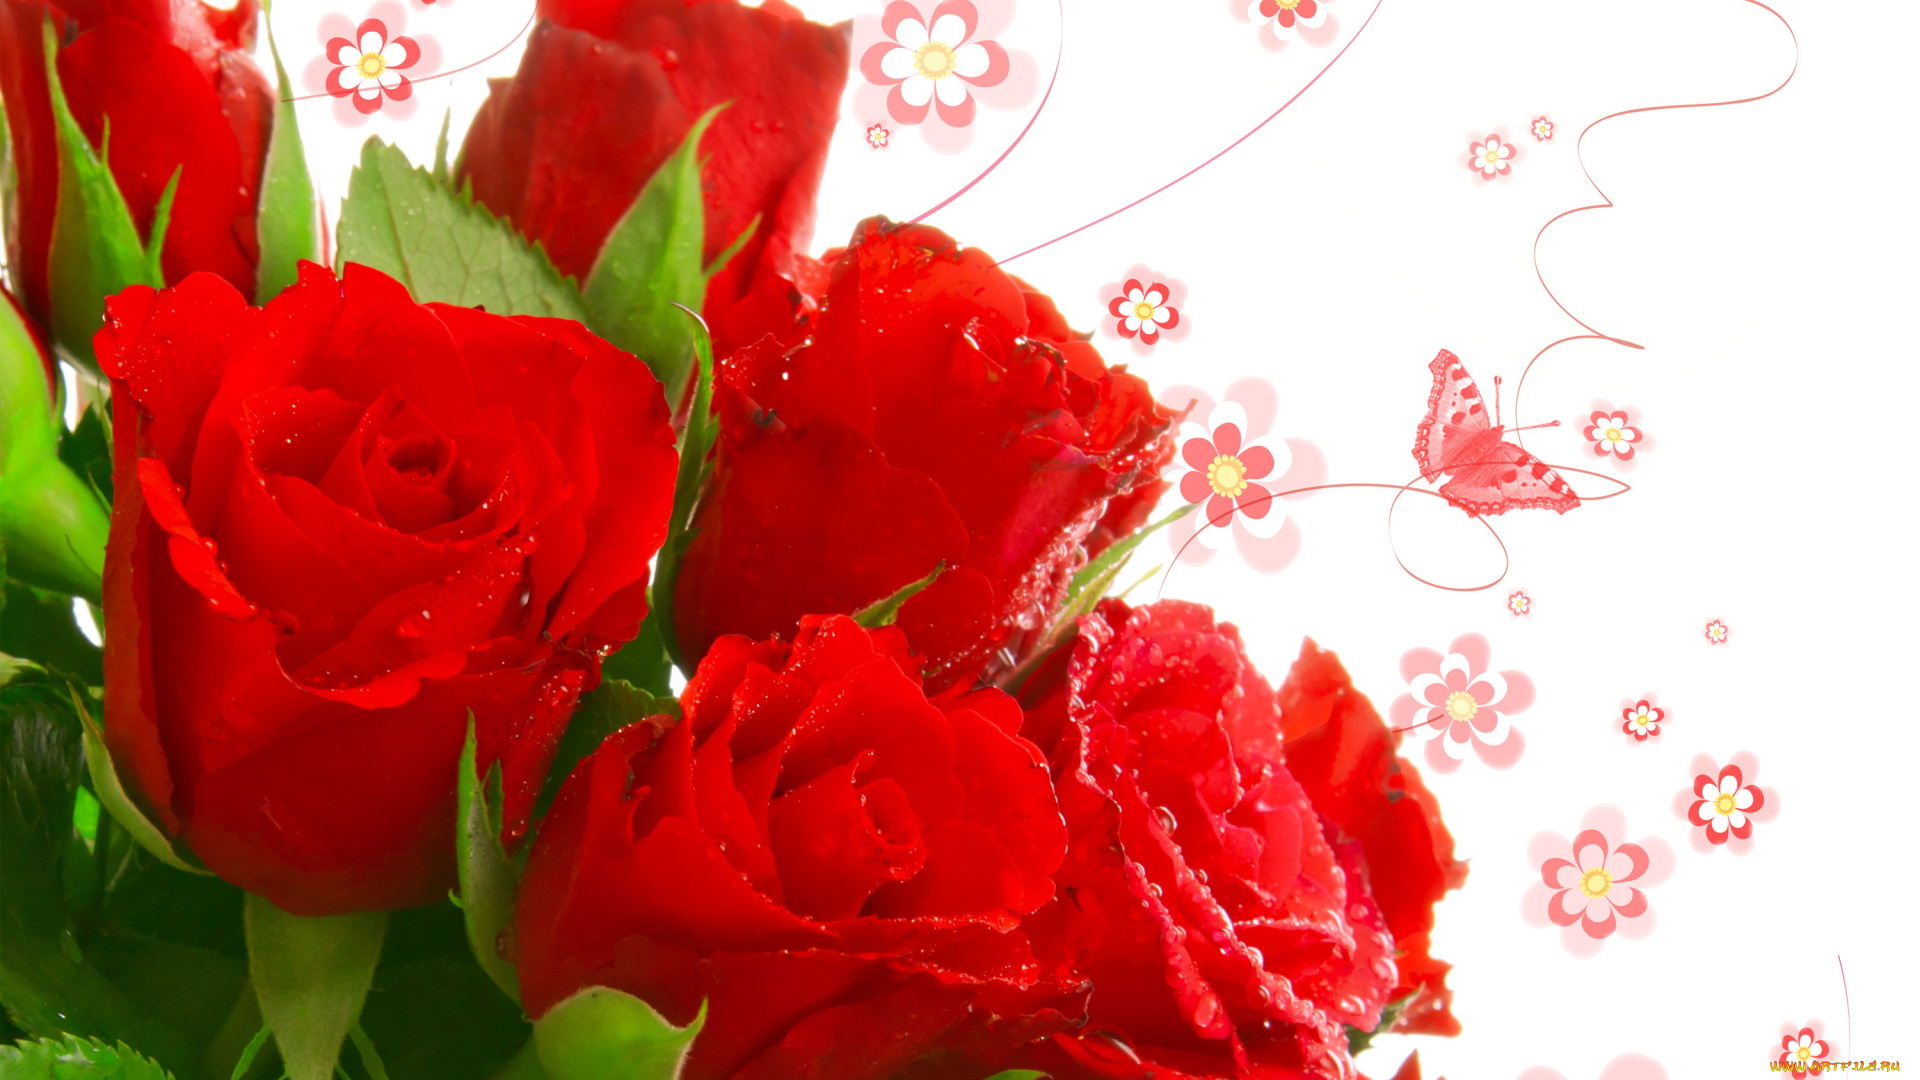 cvety-rozy-babochki-krasnye-814018.jpg